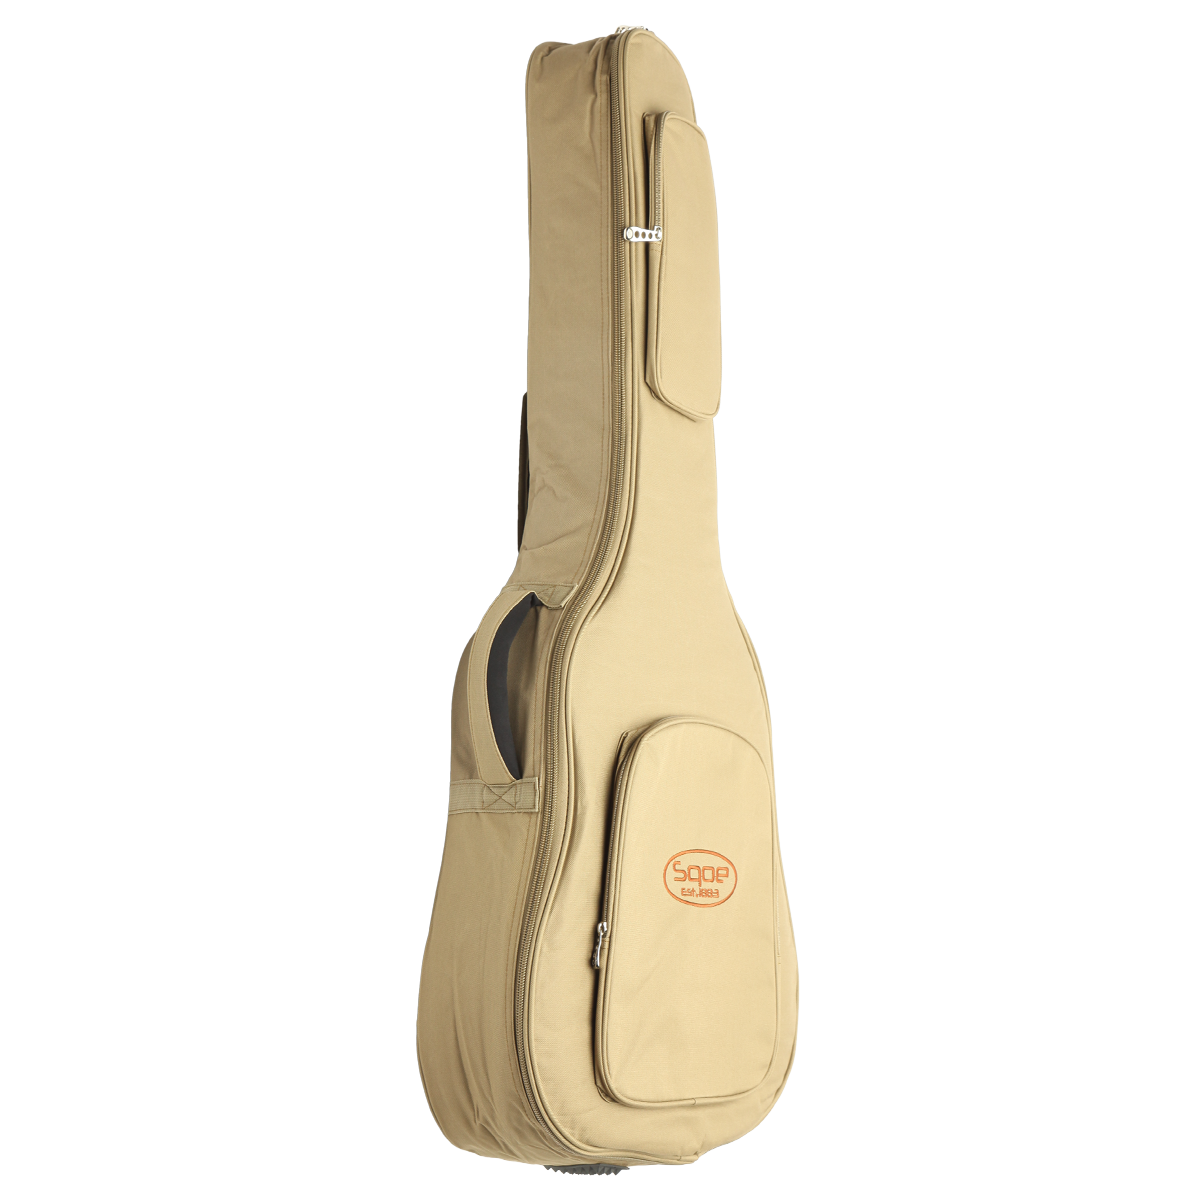 SQOE Qb-mb-25mm-41 green Чехол для акустической гитары 41'' с утеплителем 25мм